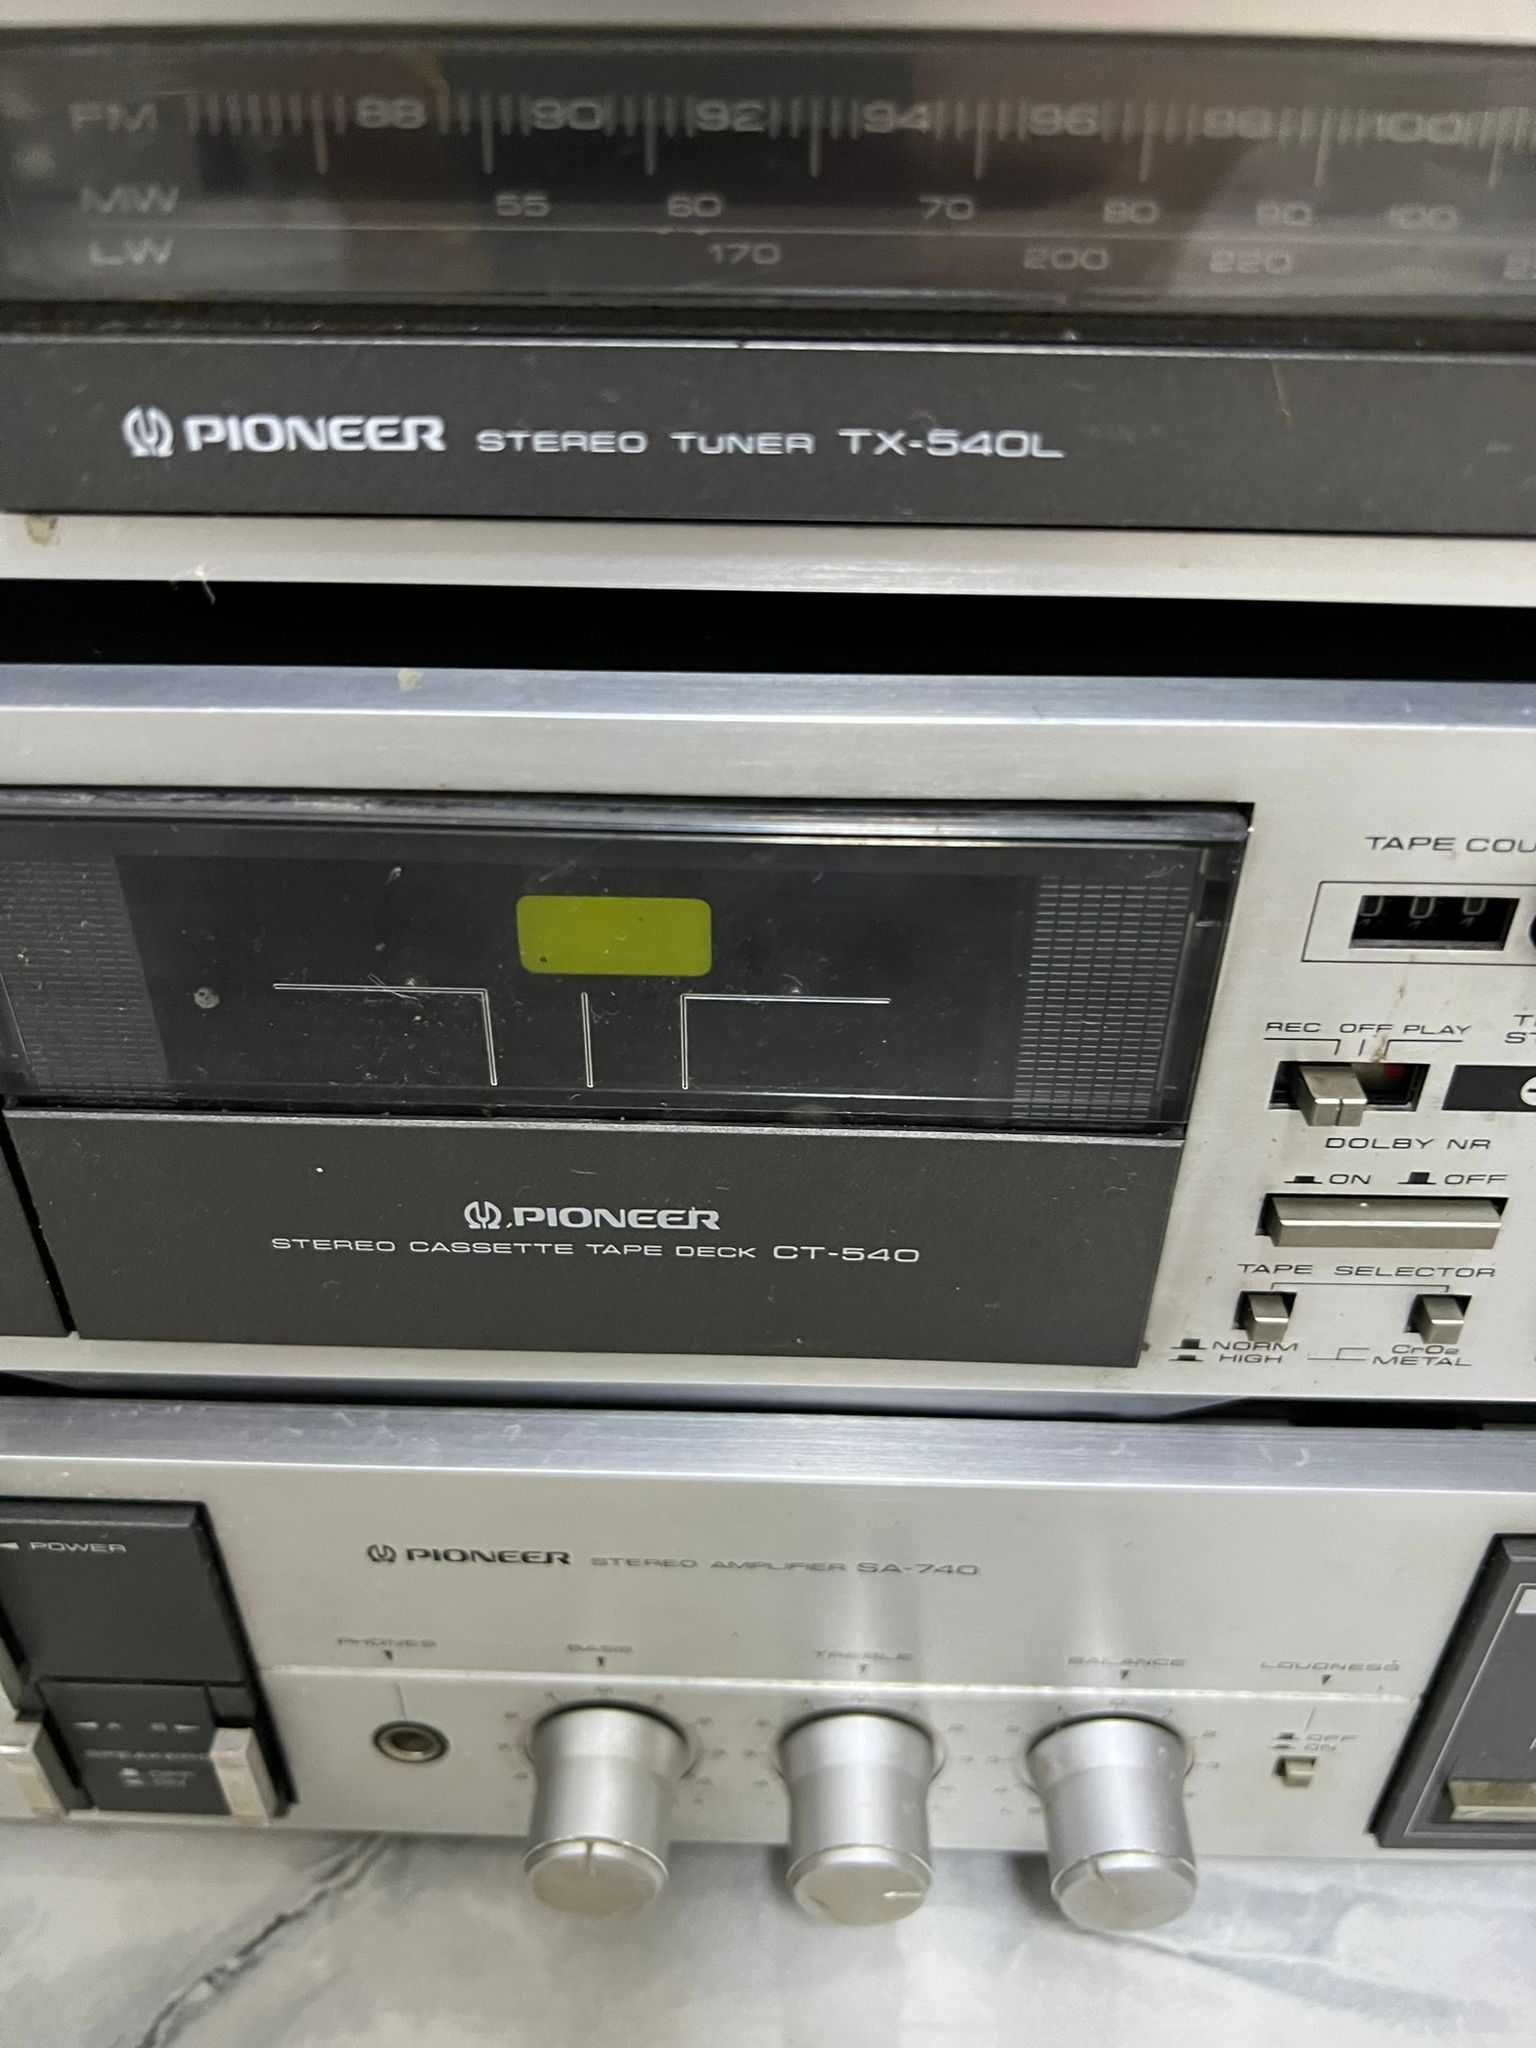 Pioneer Auto-return stereo turntable PL-640